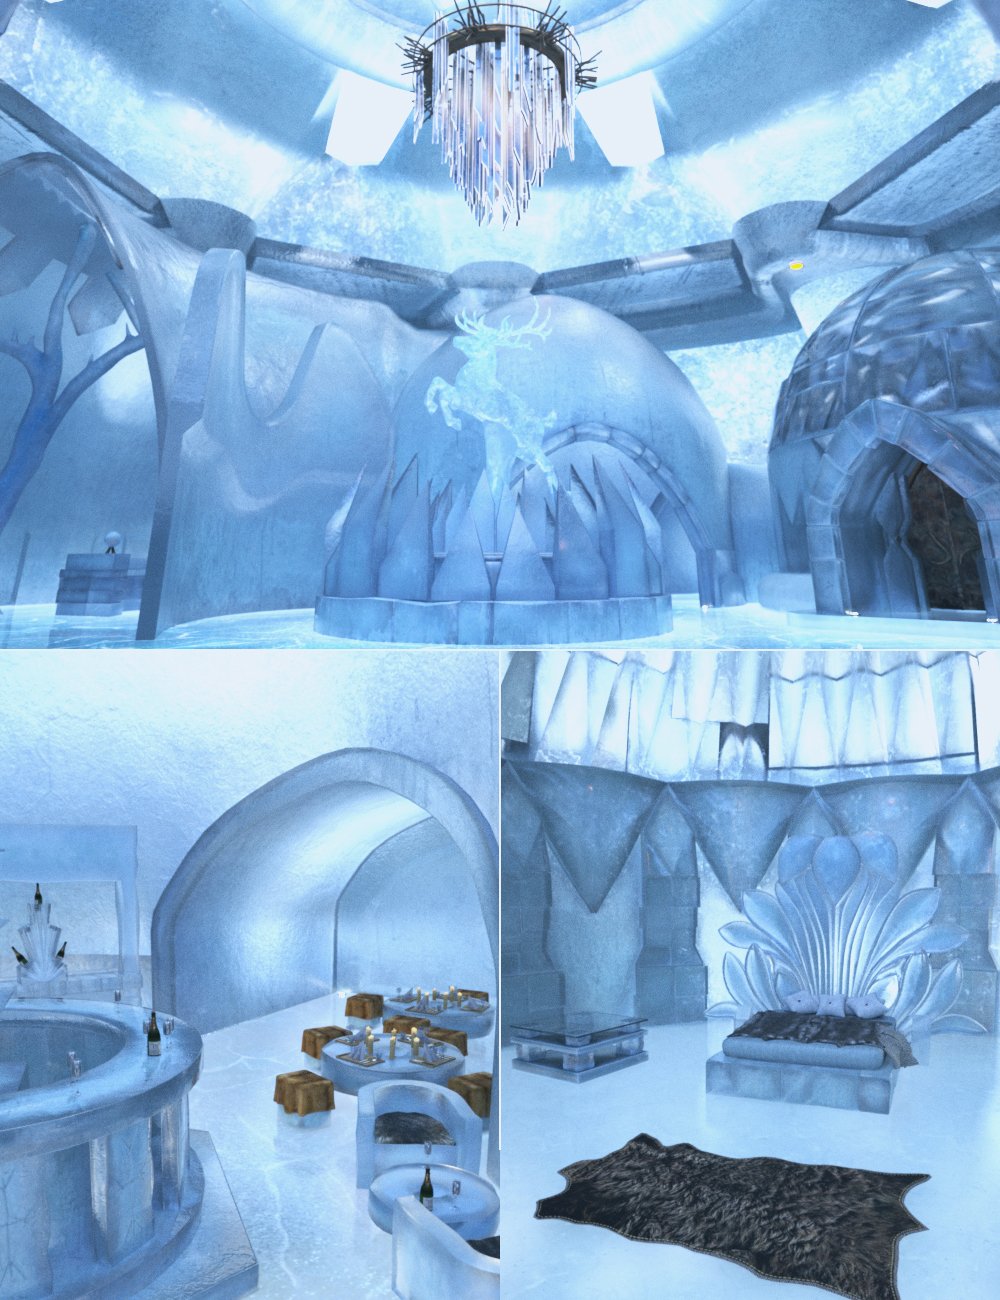 XI Frozen Hotel by: Xivon, 3D Models by Daz 3D